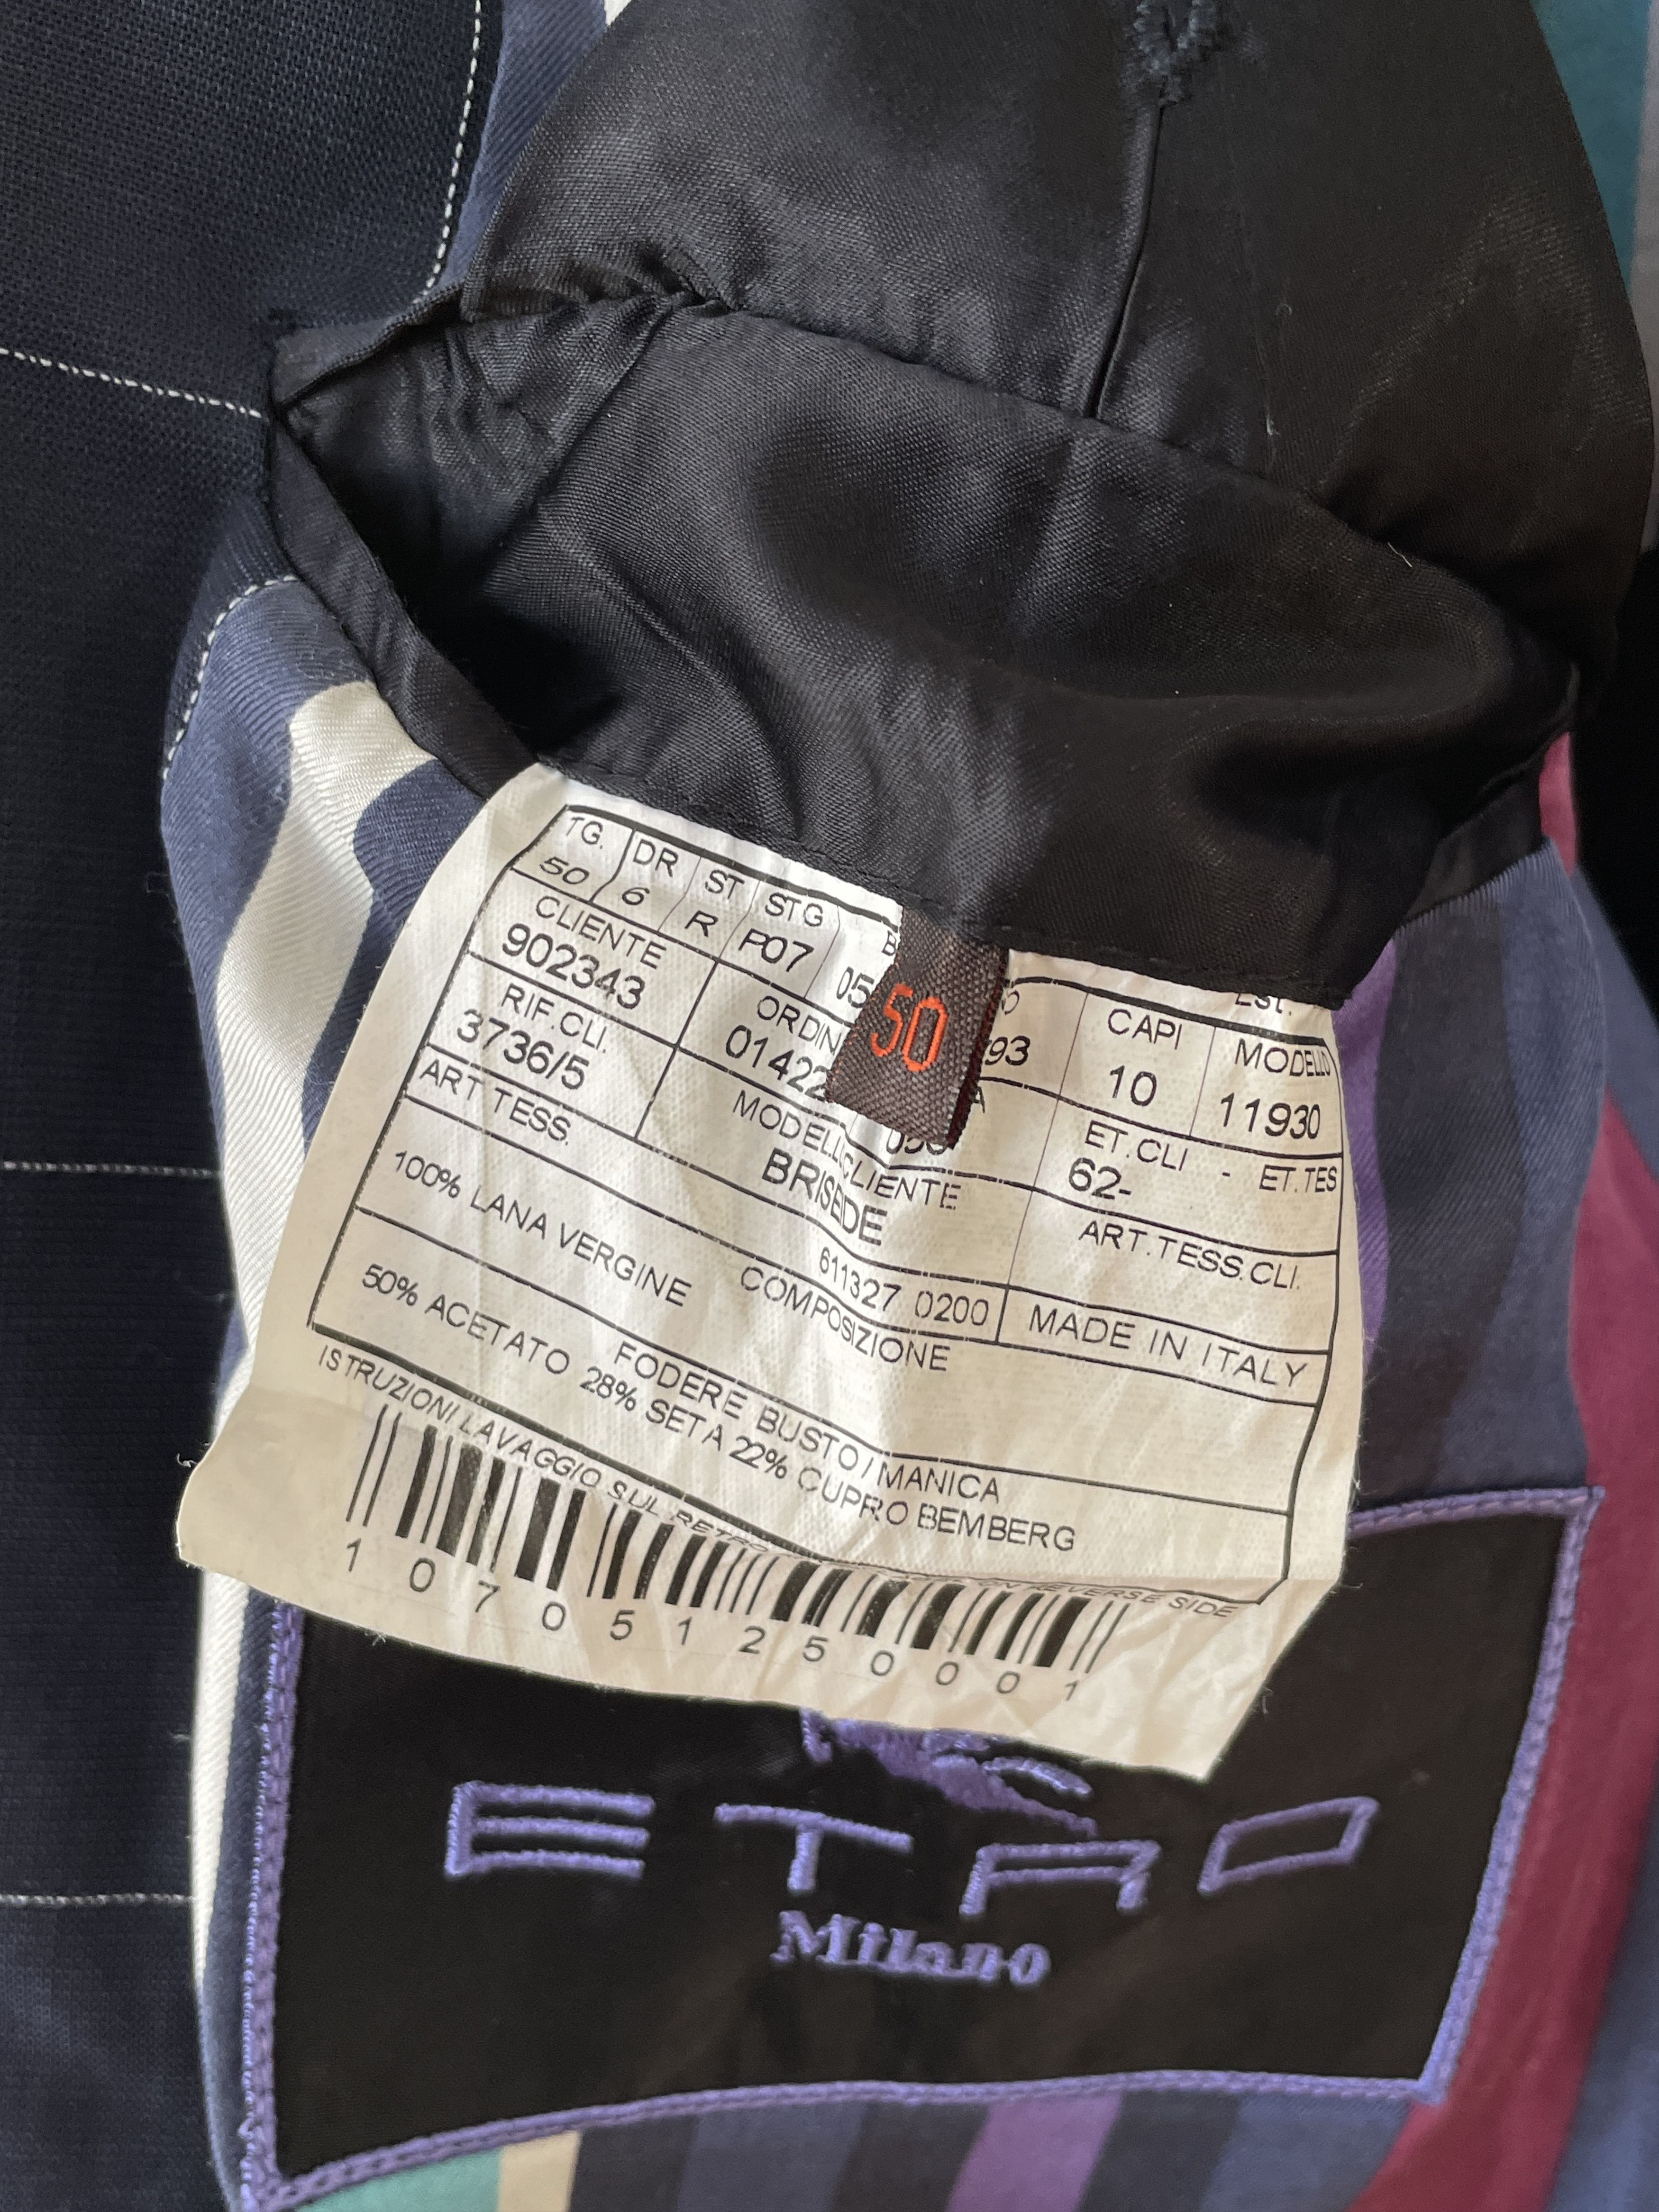 Etro ETRO Jacket Coat Blazer Trousers Suit Plaid Wool A7923 Size 40R - 10 Preview